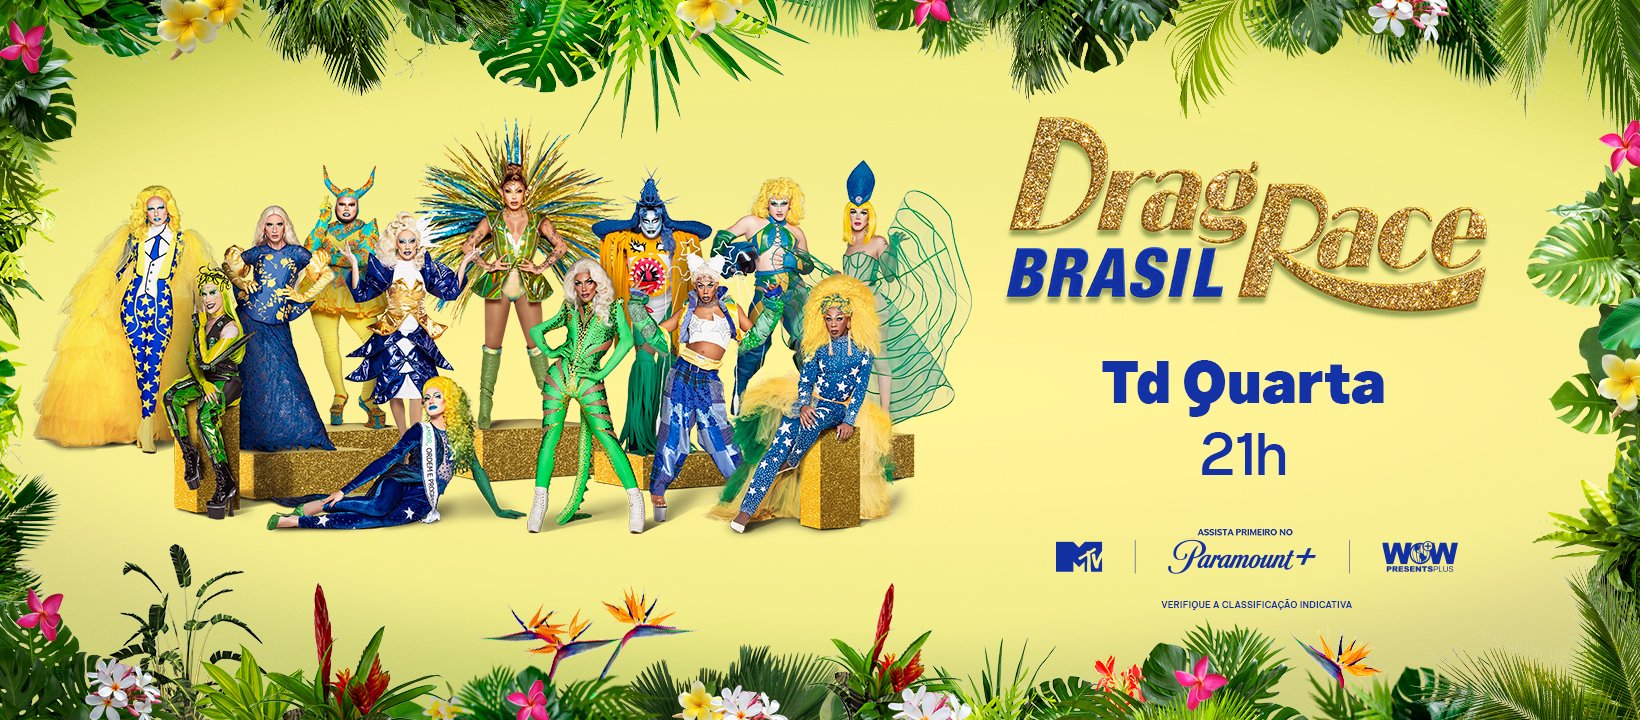 Drag Race Brasil on X: O nosso Drag Race já está entre nós, bebê 😭🥹  #DragRaceBrasil às quartas-feiras, 21h, na @MTVBrasil. Os episódios são  disponibilizados semanalmente no @paramountplusbr para todo o Brasil